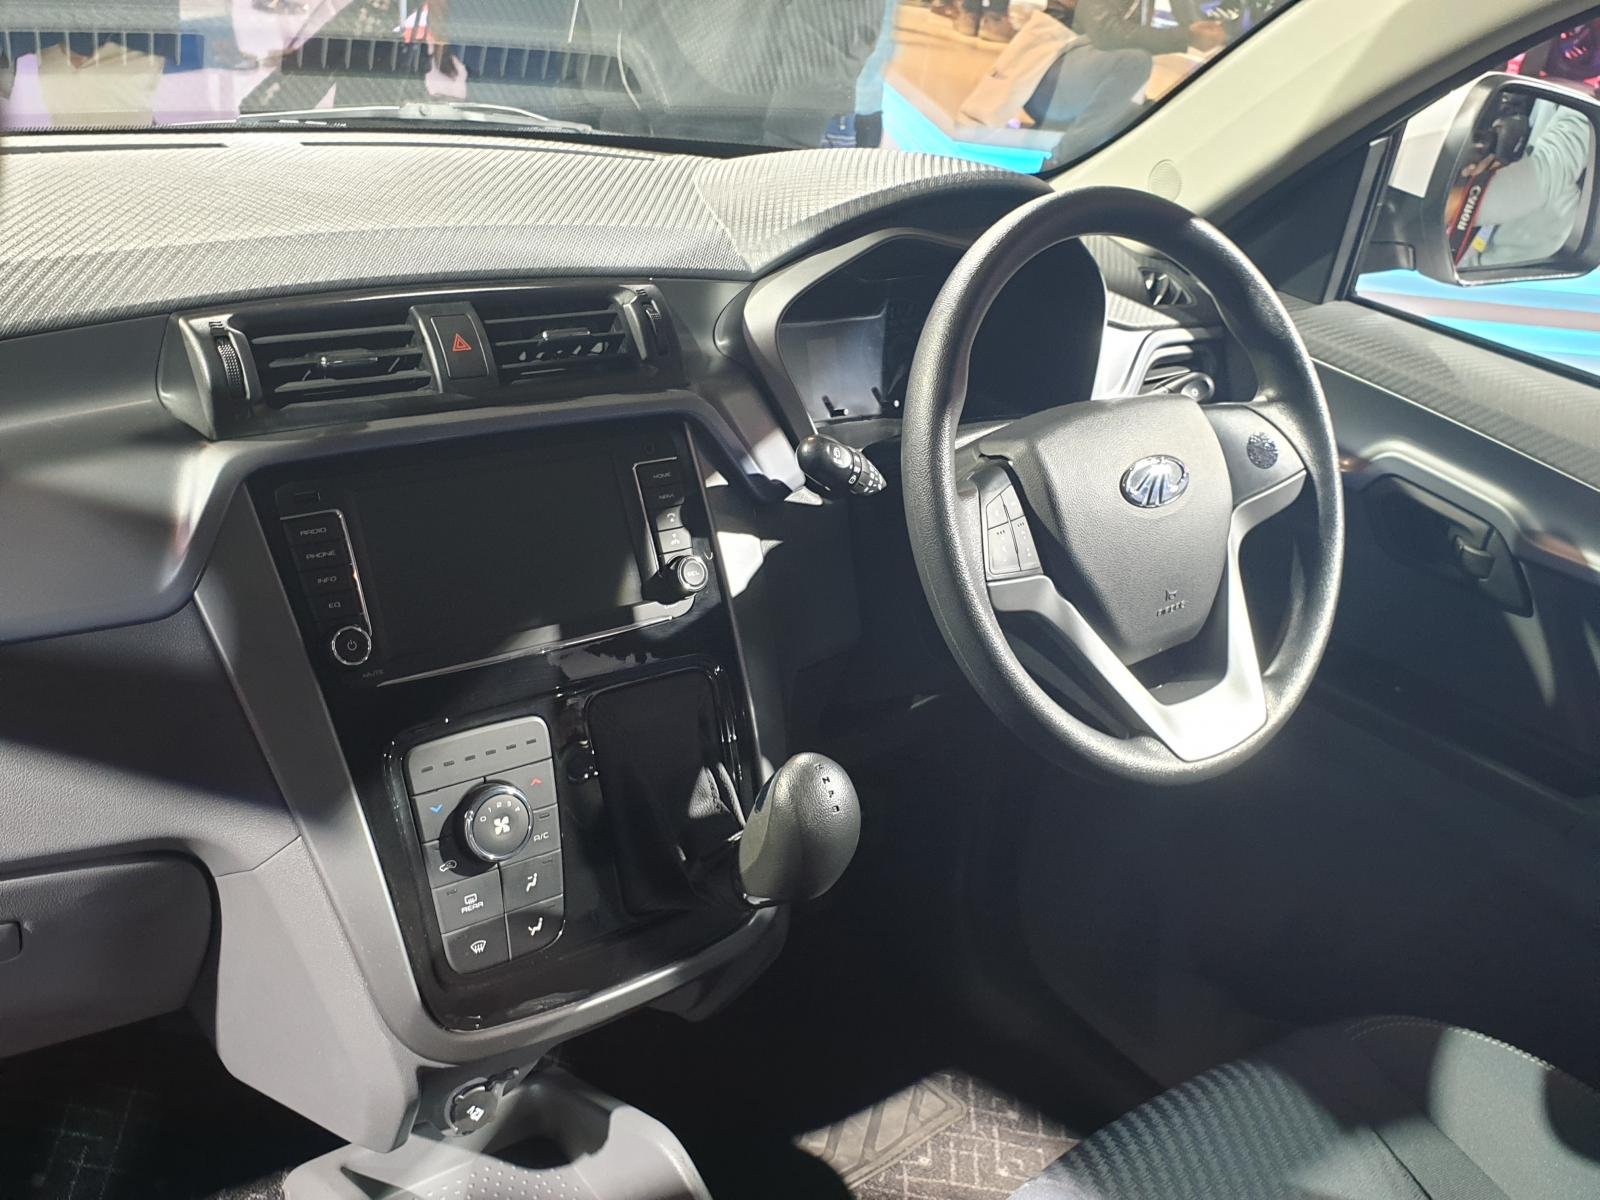 Auto Expo 2020 - Mahindra eKUV100 interior